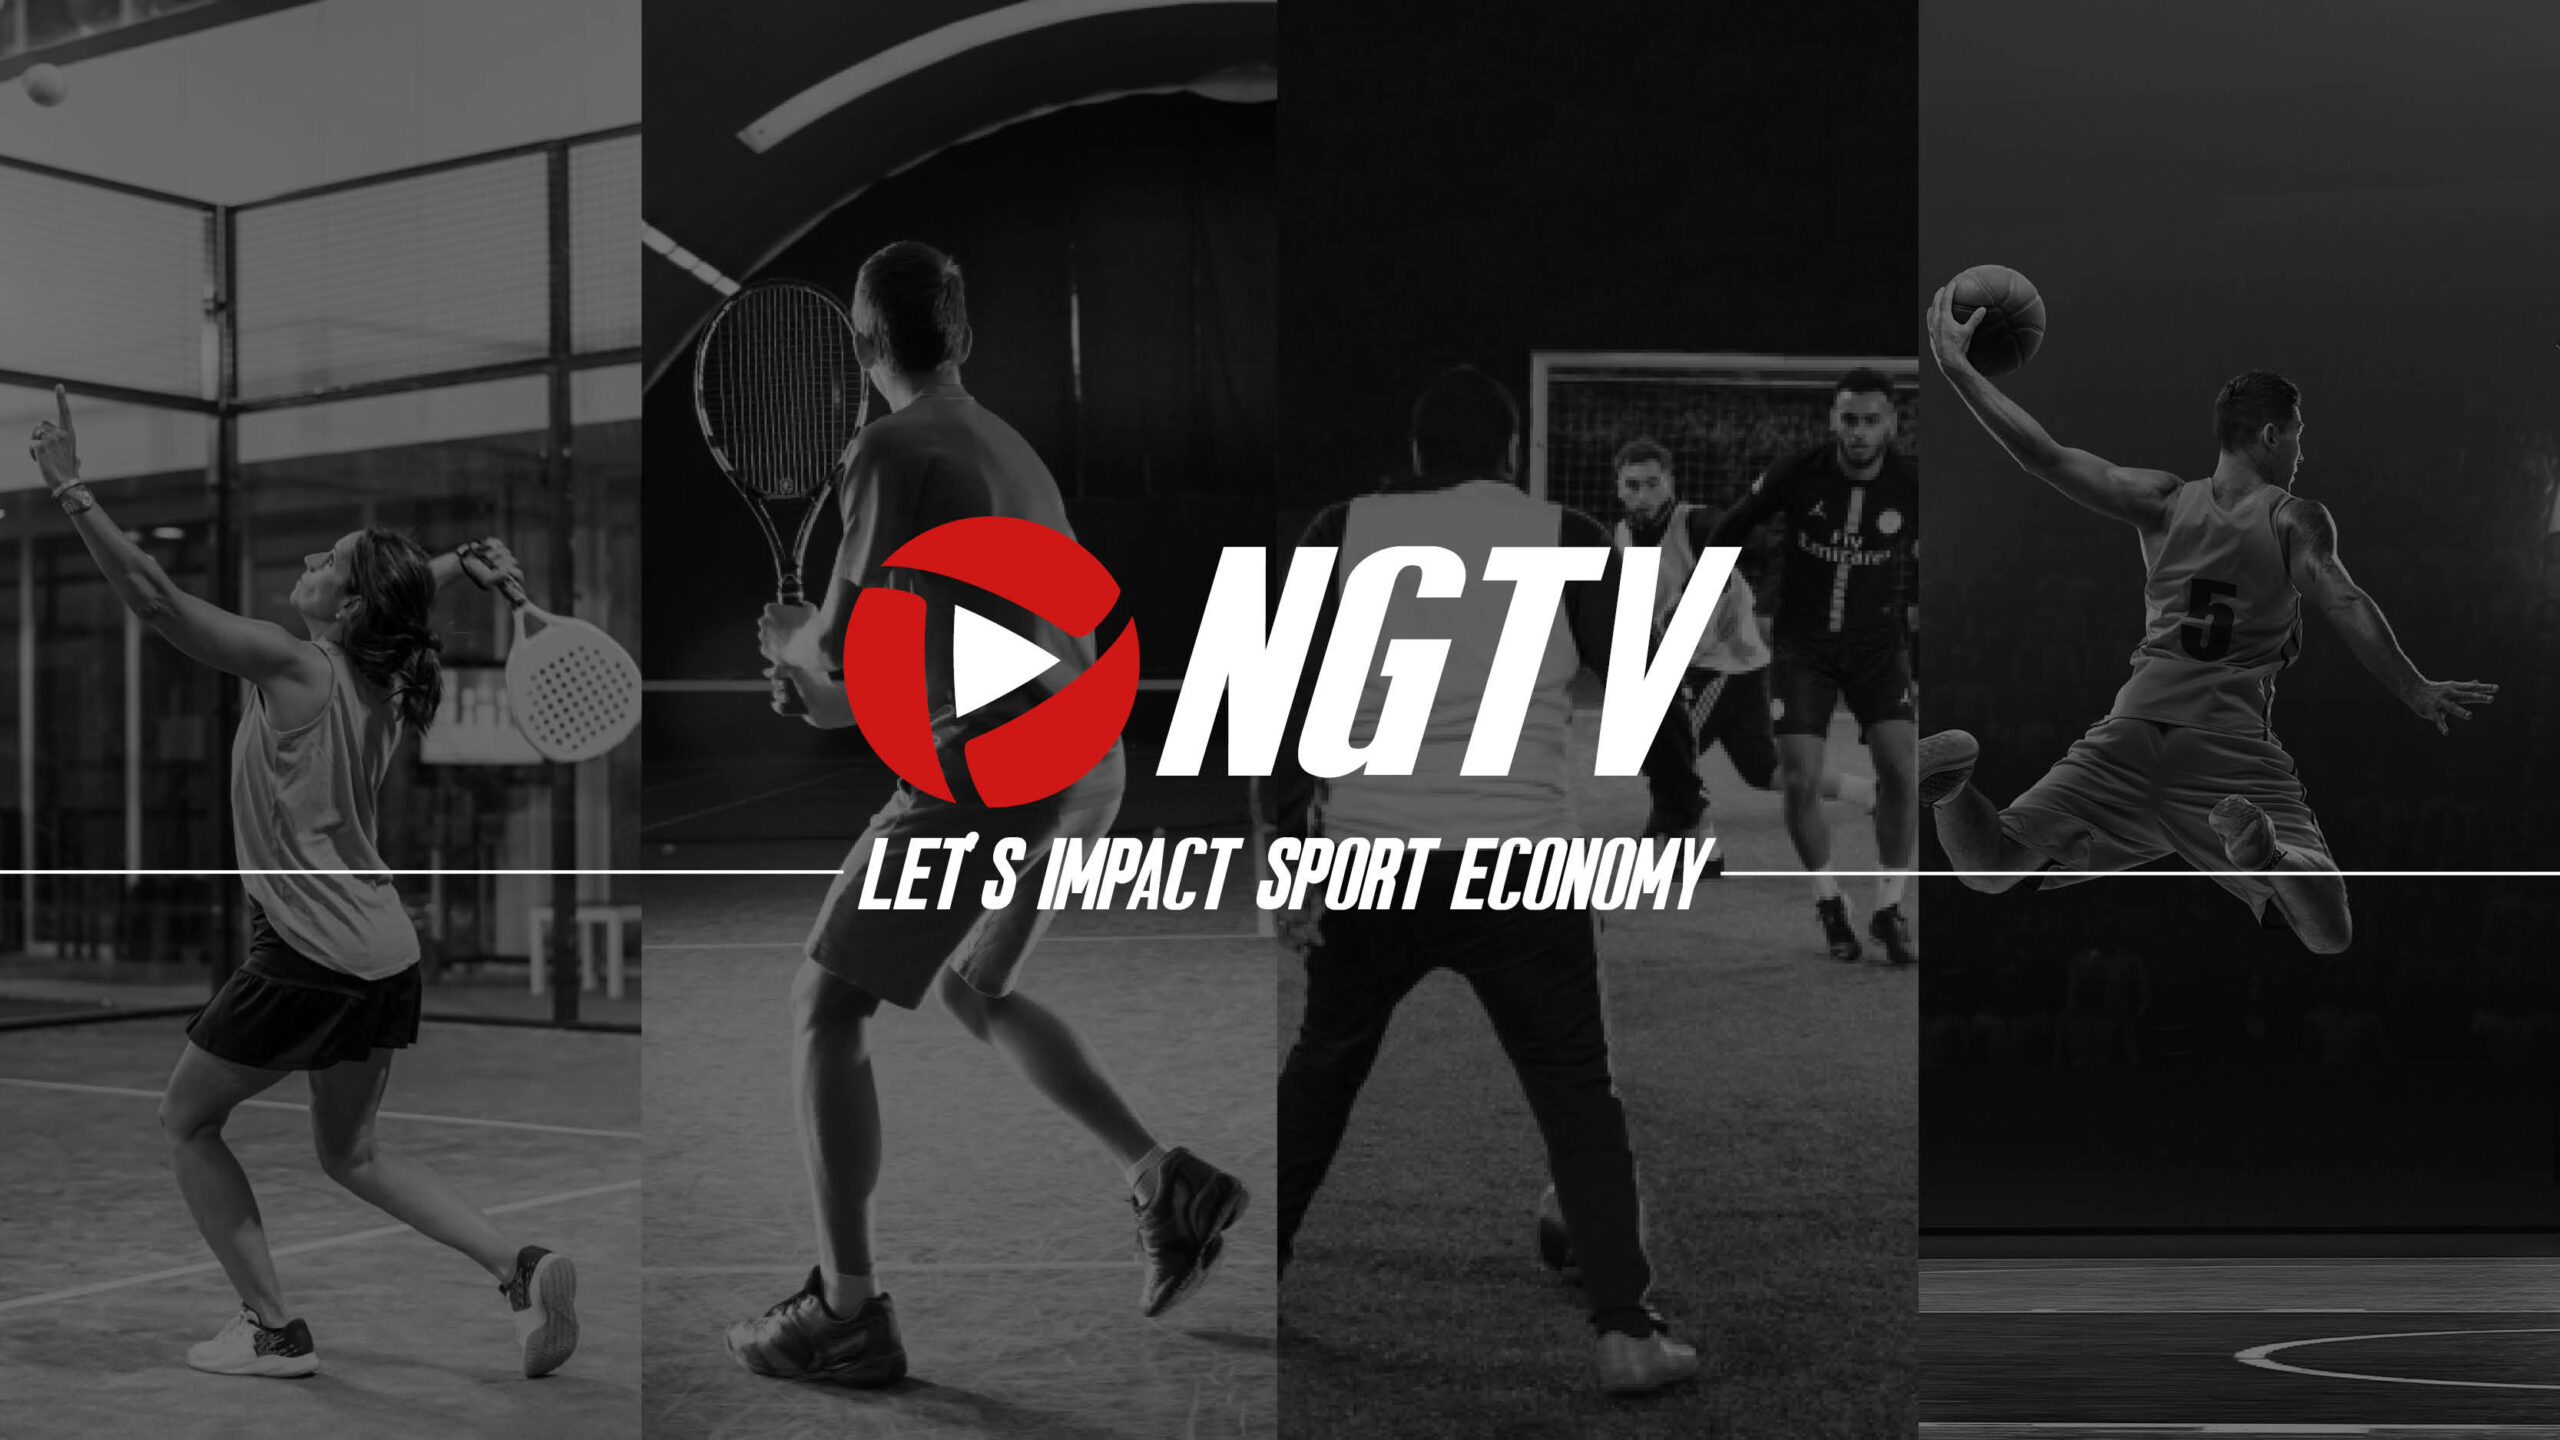 NGTV:s mål: att påverka sportekonomin!